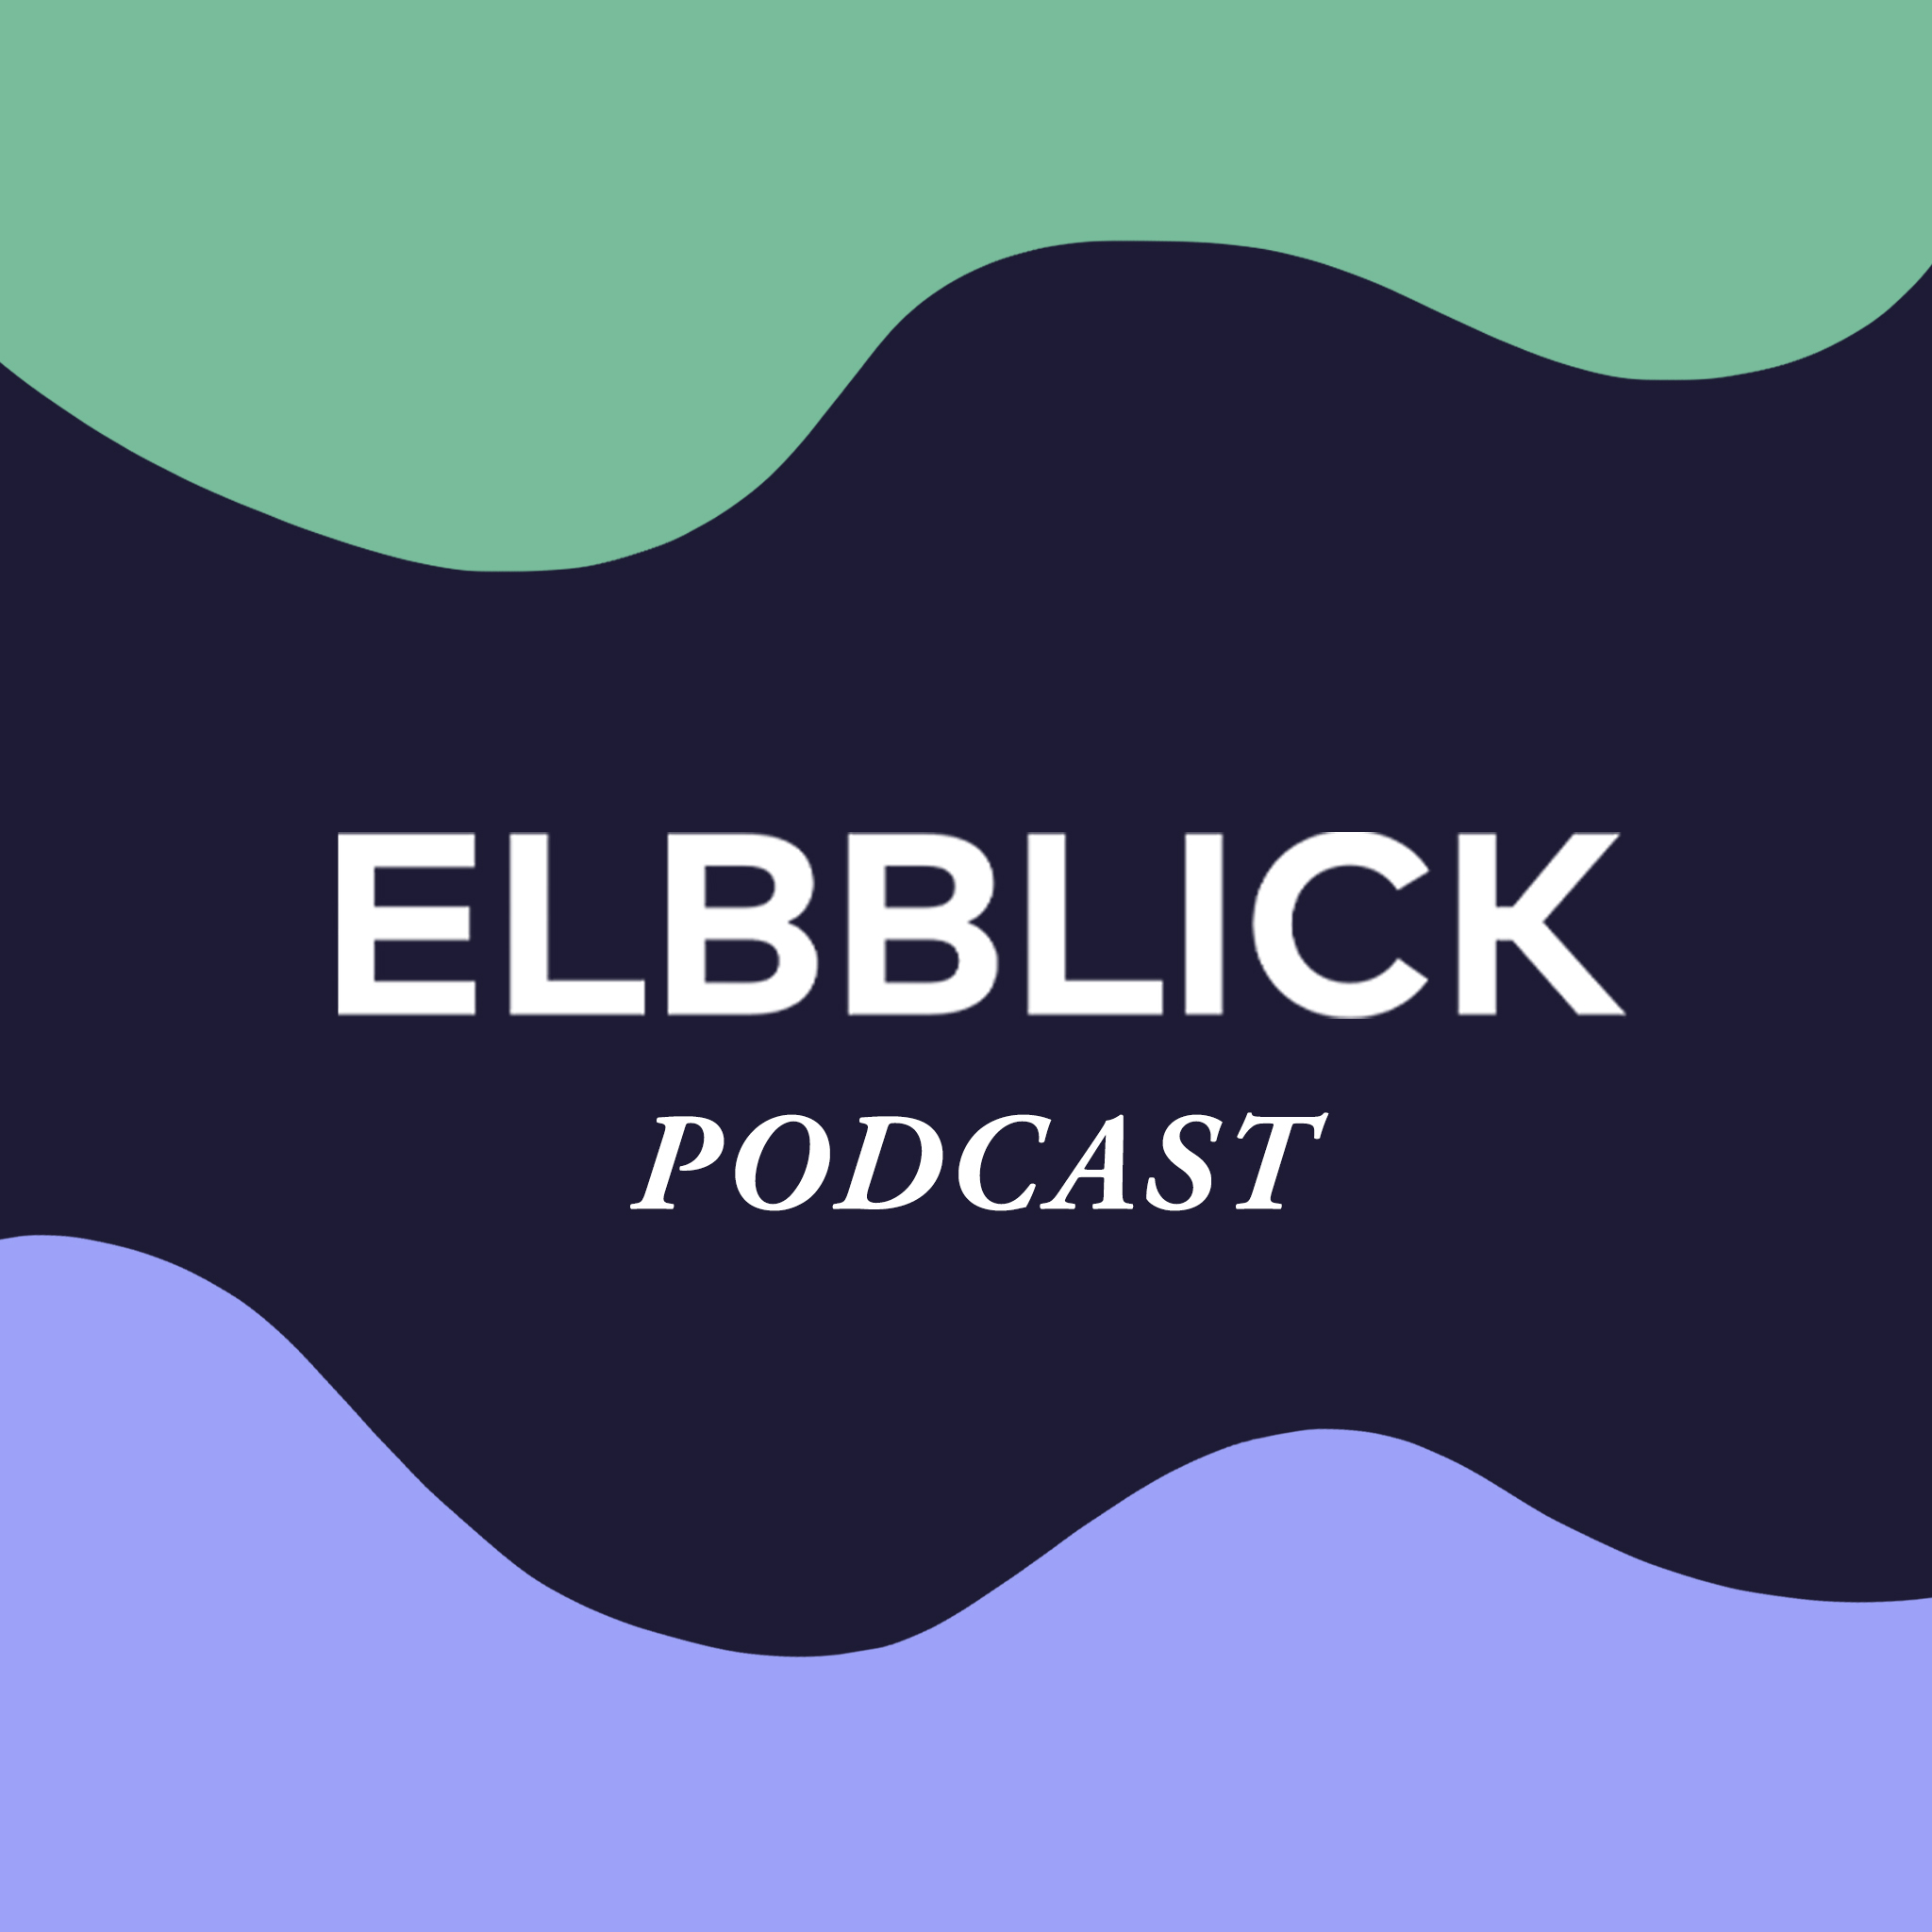 ELBBLICK Podcast ist zurück!